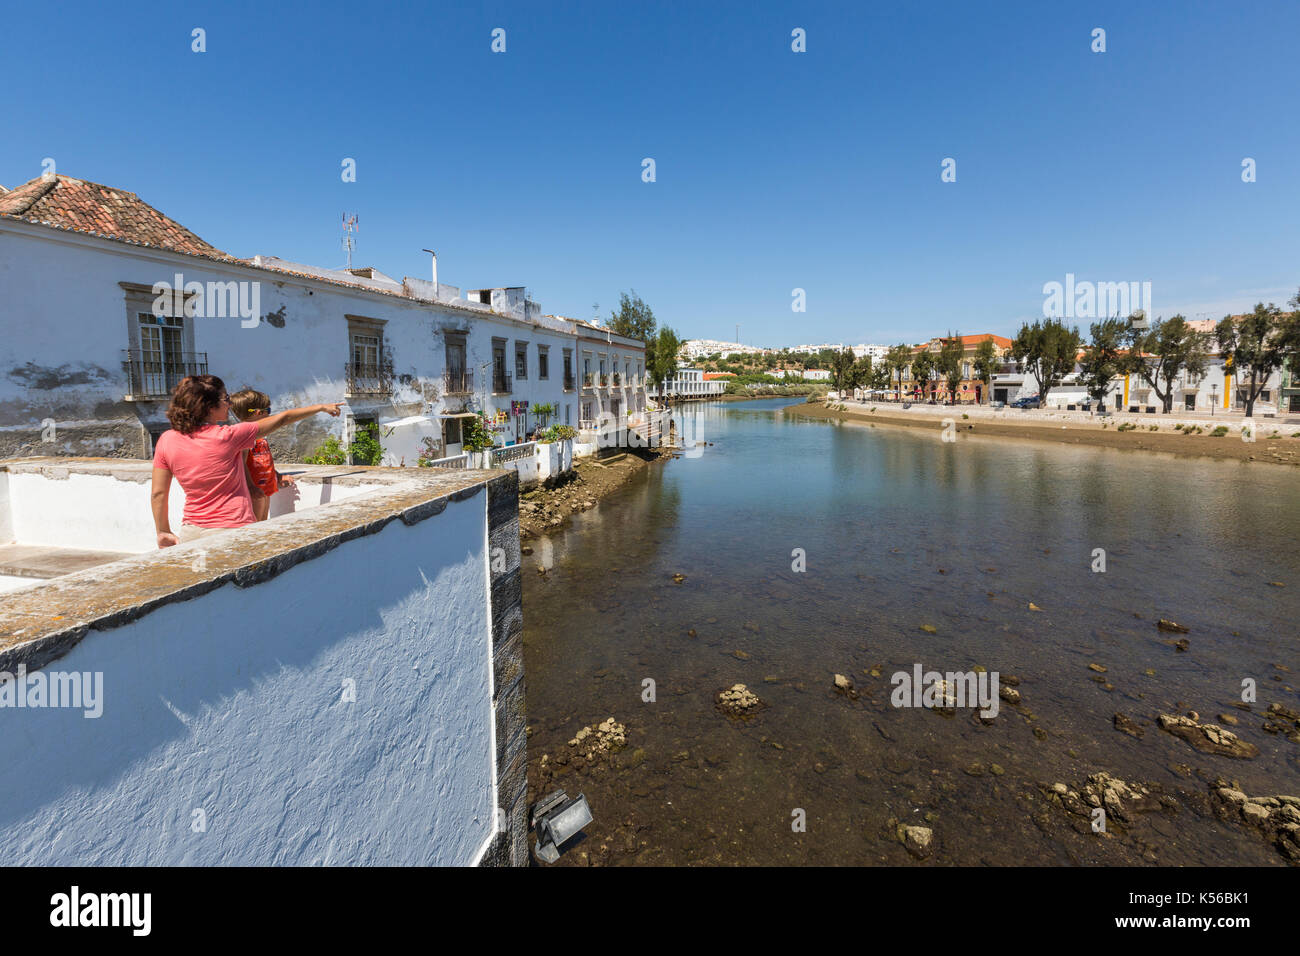 Les touristes admirent le paysage et les maisons typiques sur les rives de la rivière Gilão dans le village de Tavira Faro Algarve Portugal Europe Banque D'Images